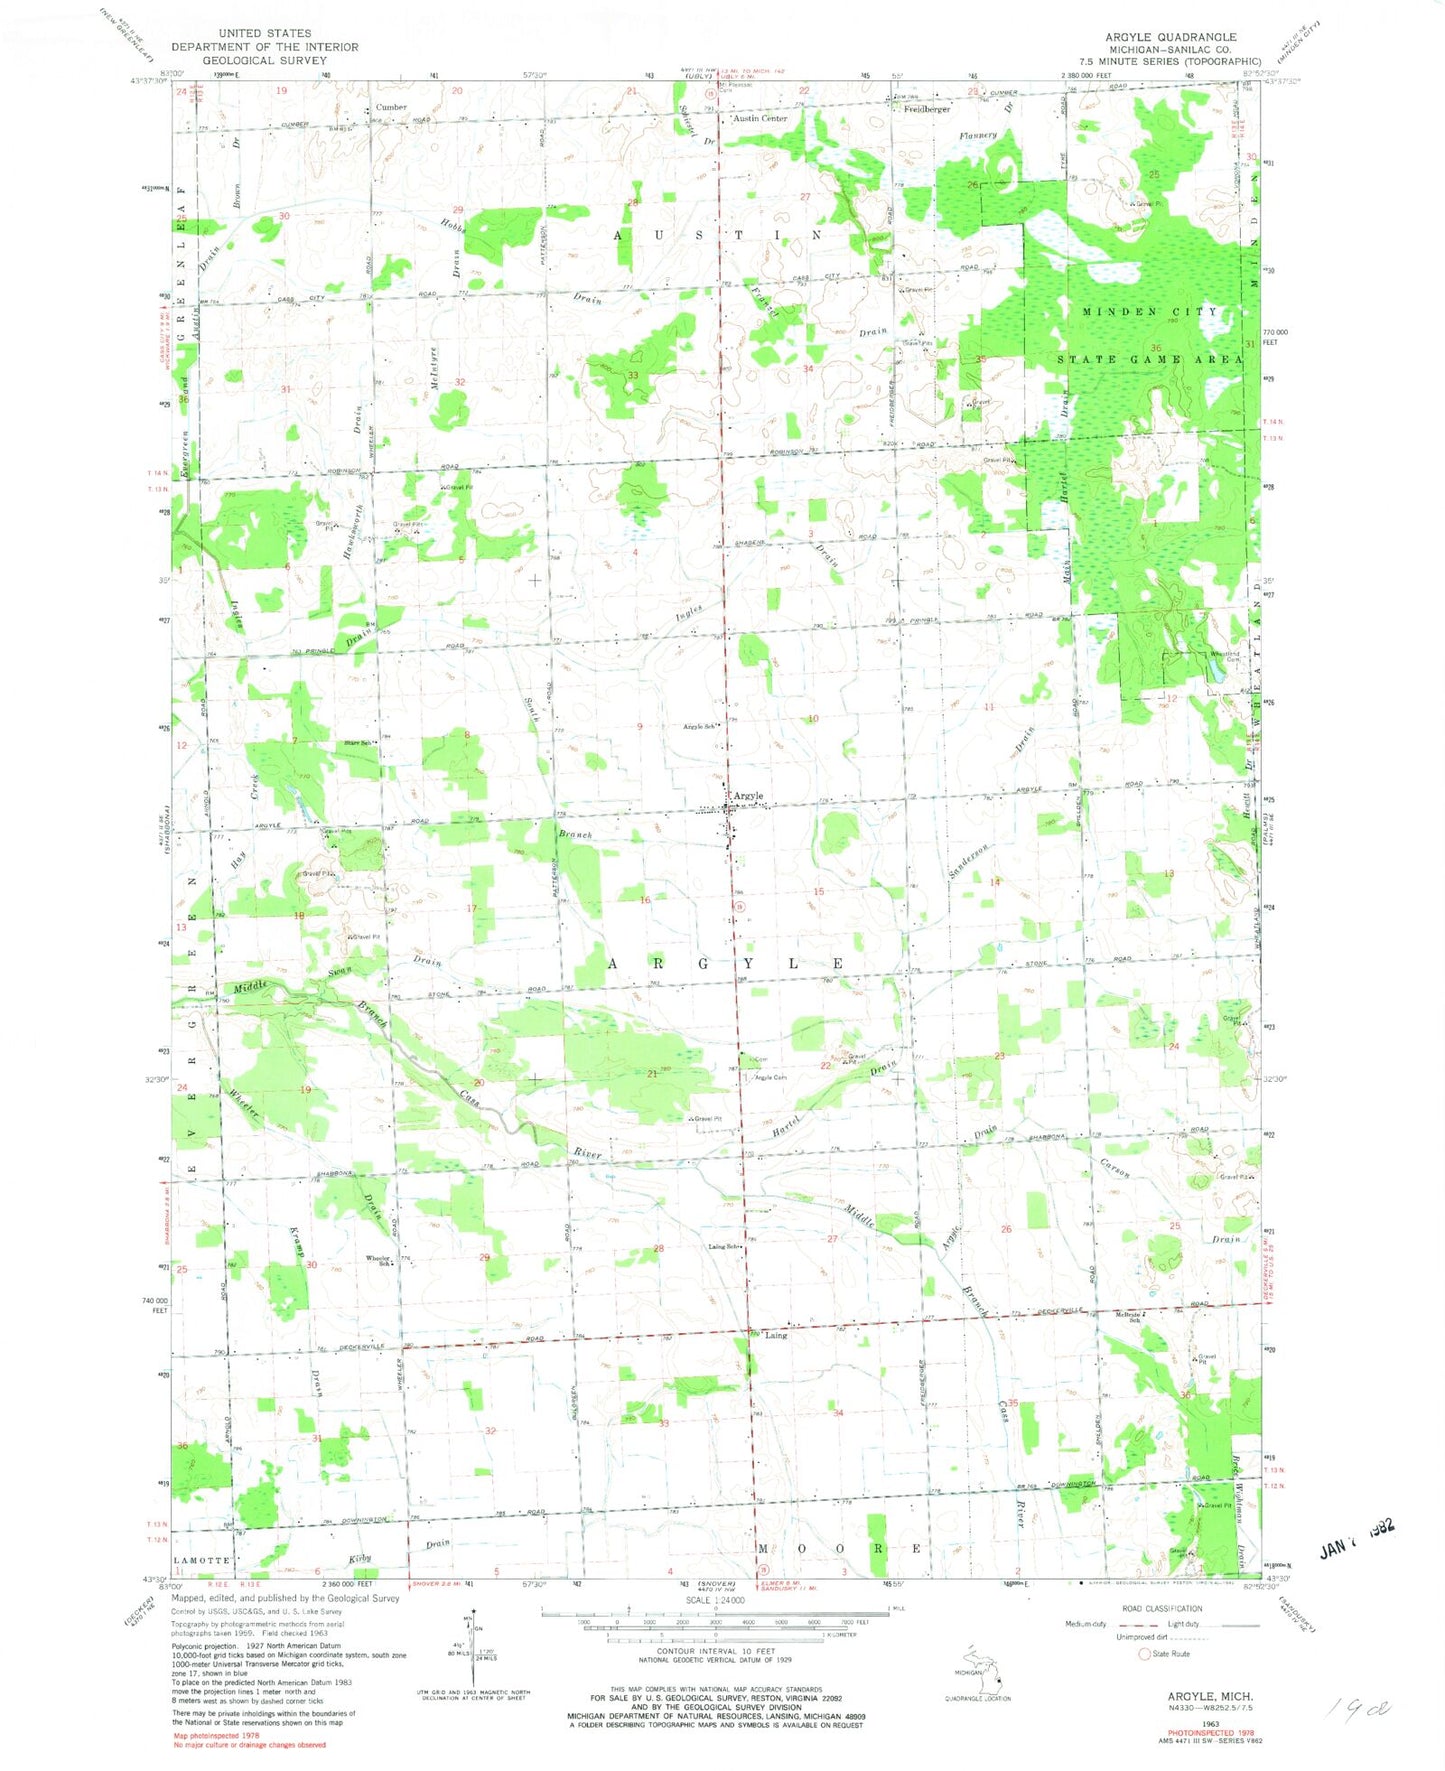 Classic USGS Argyle Michigan 7.5'x7.5' Topo Map Image